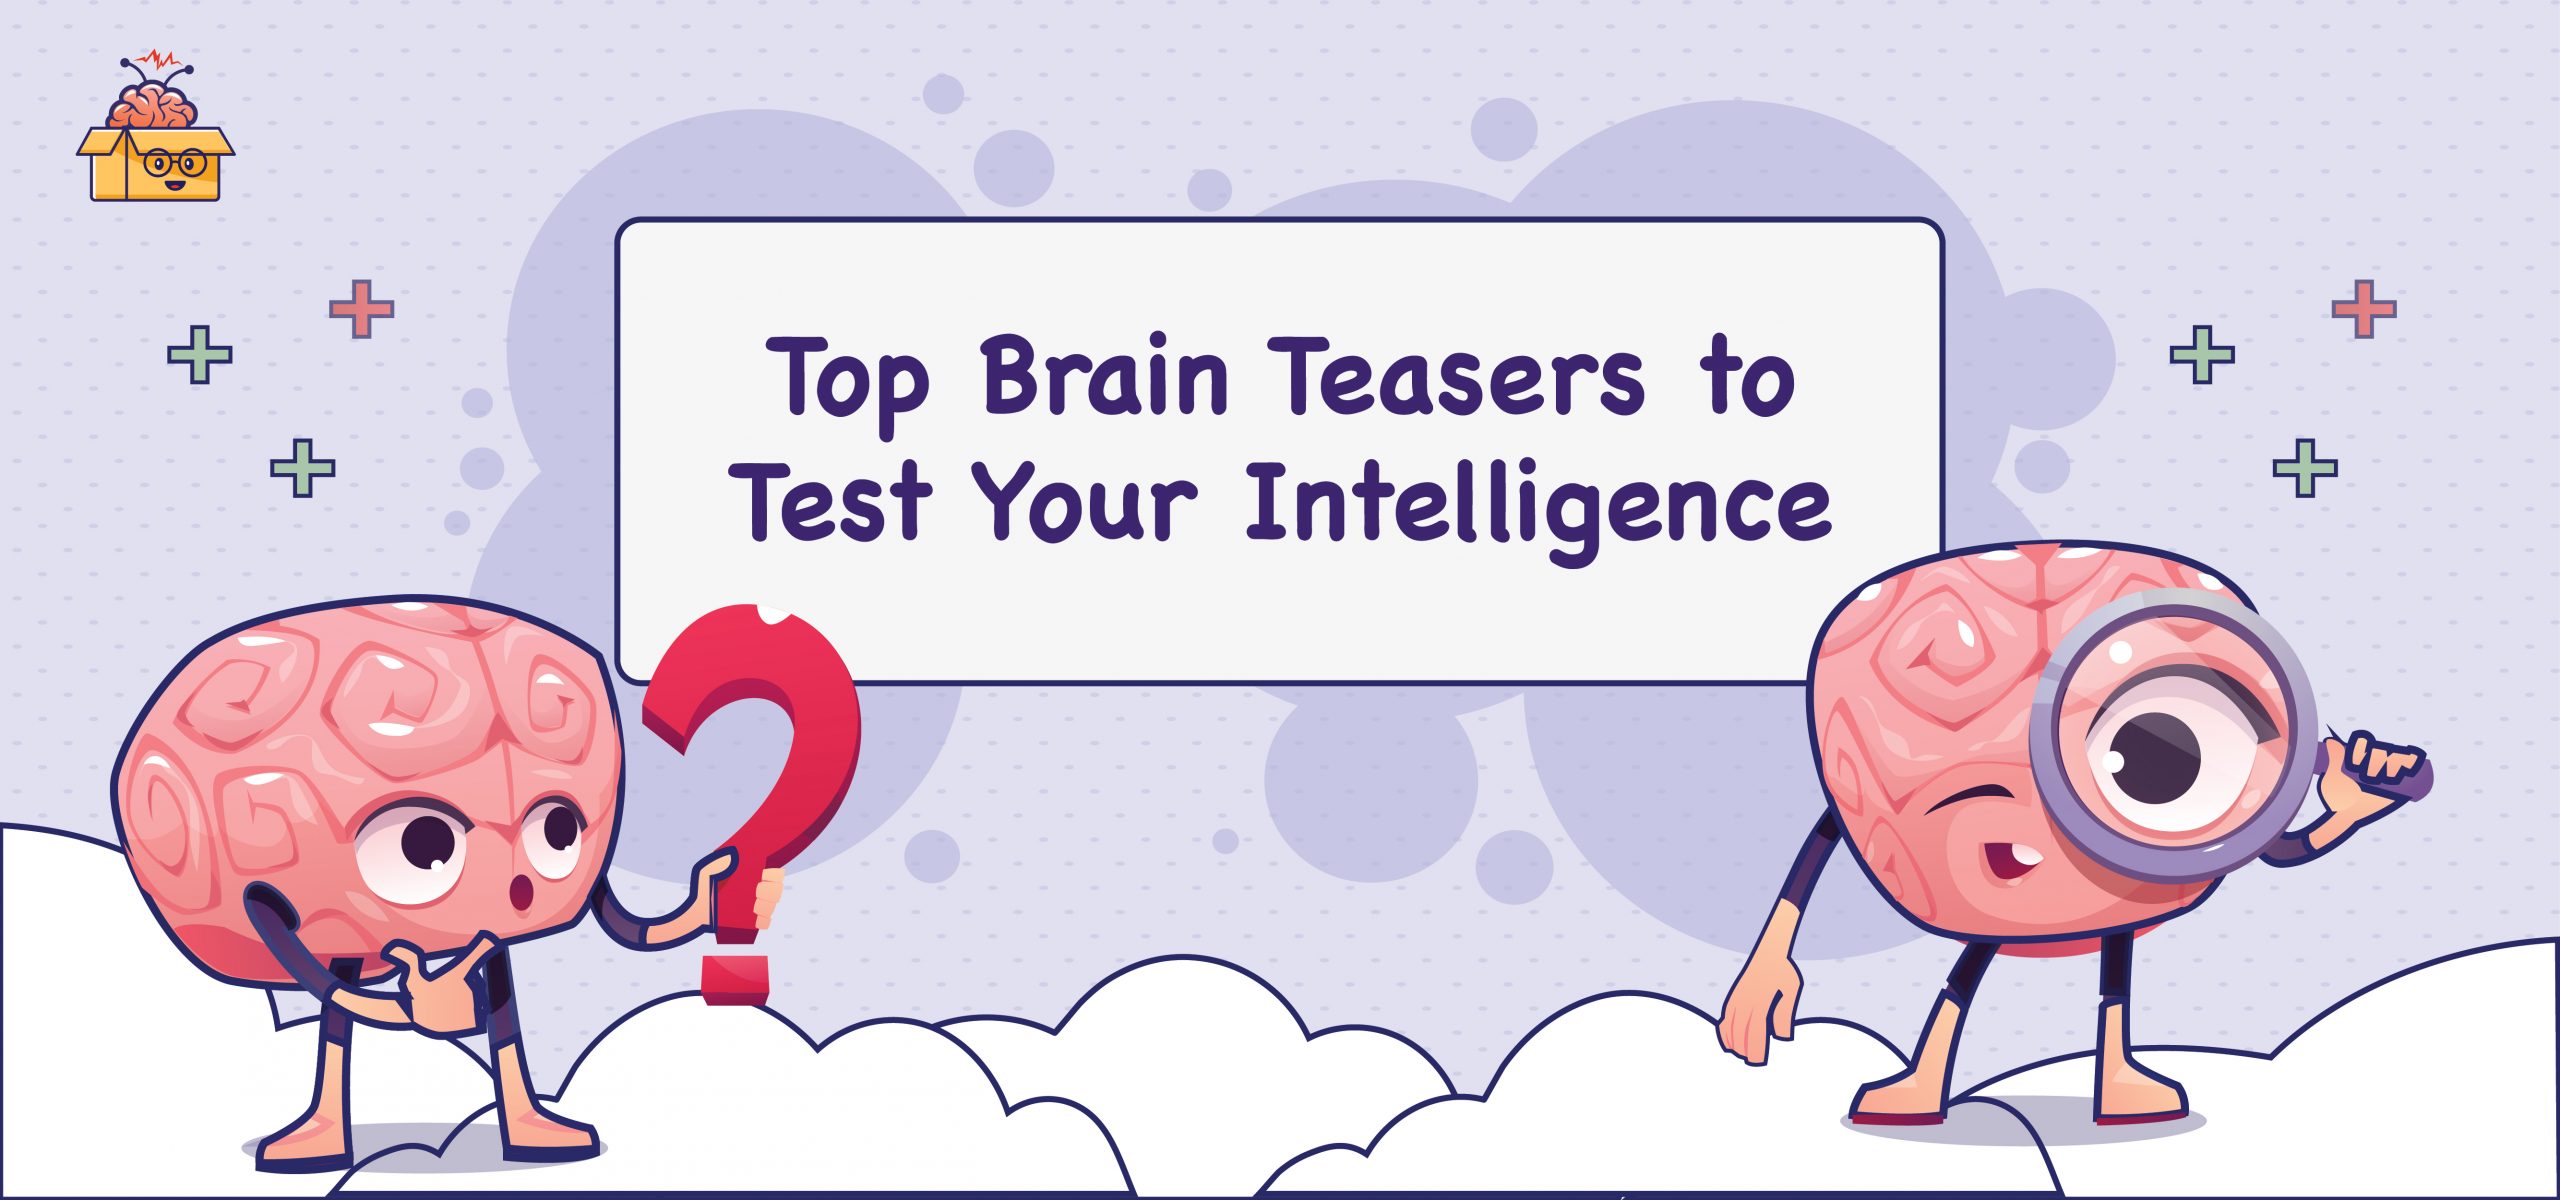 brain teasers